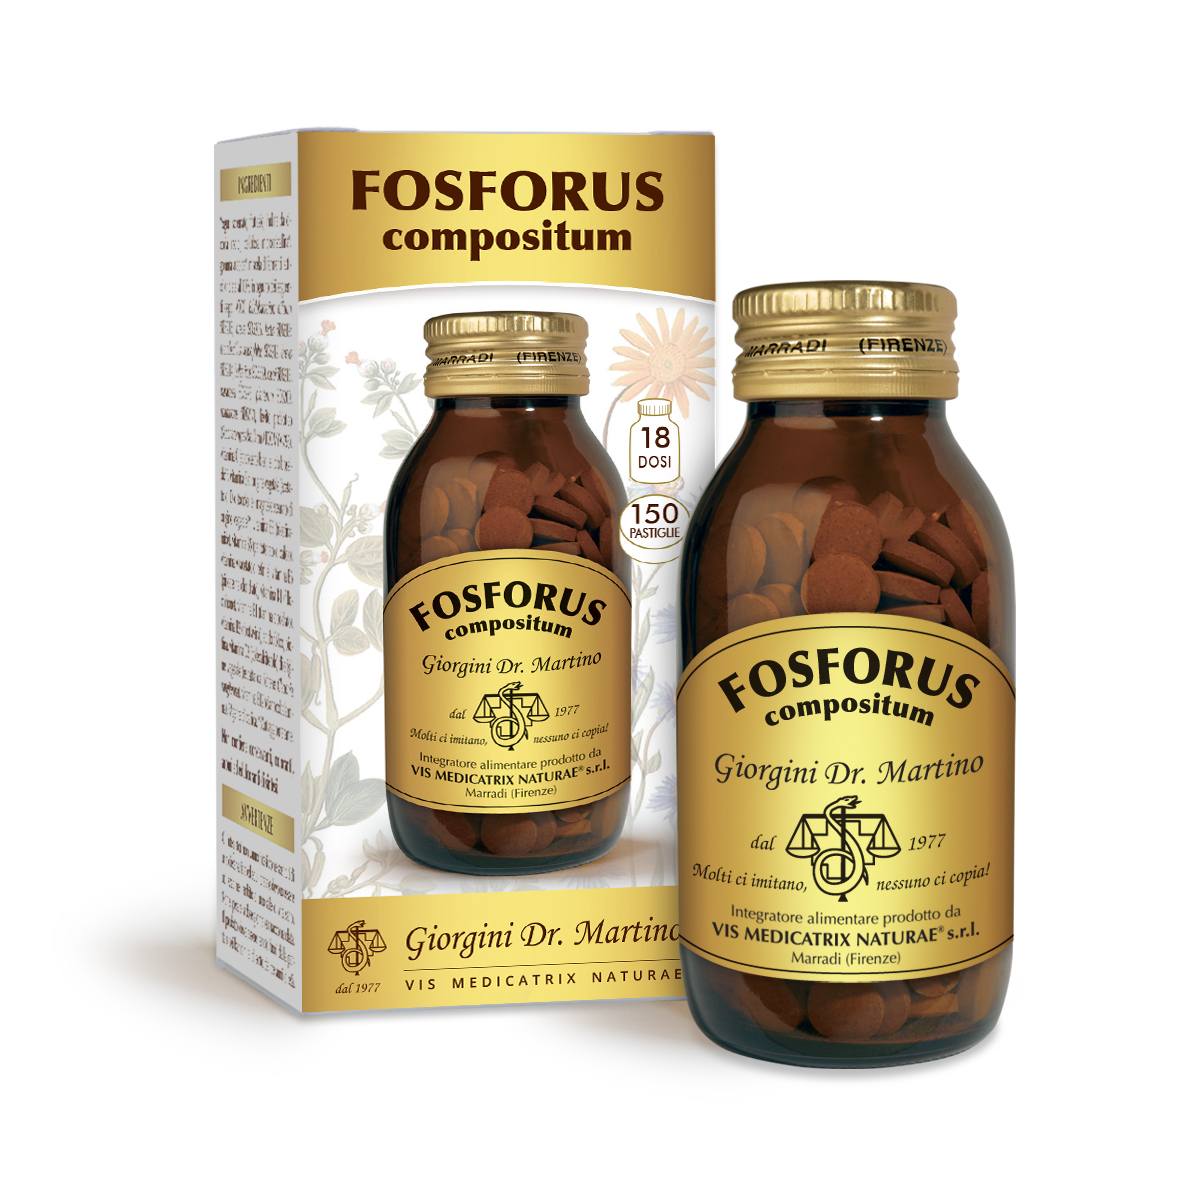 FOSFORUS COMPOSITUM